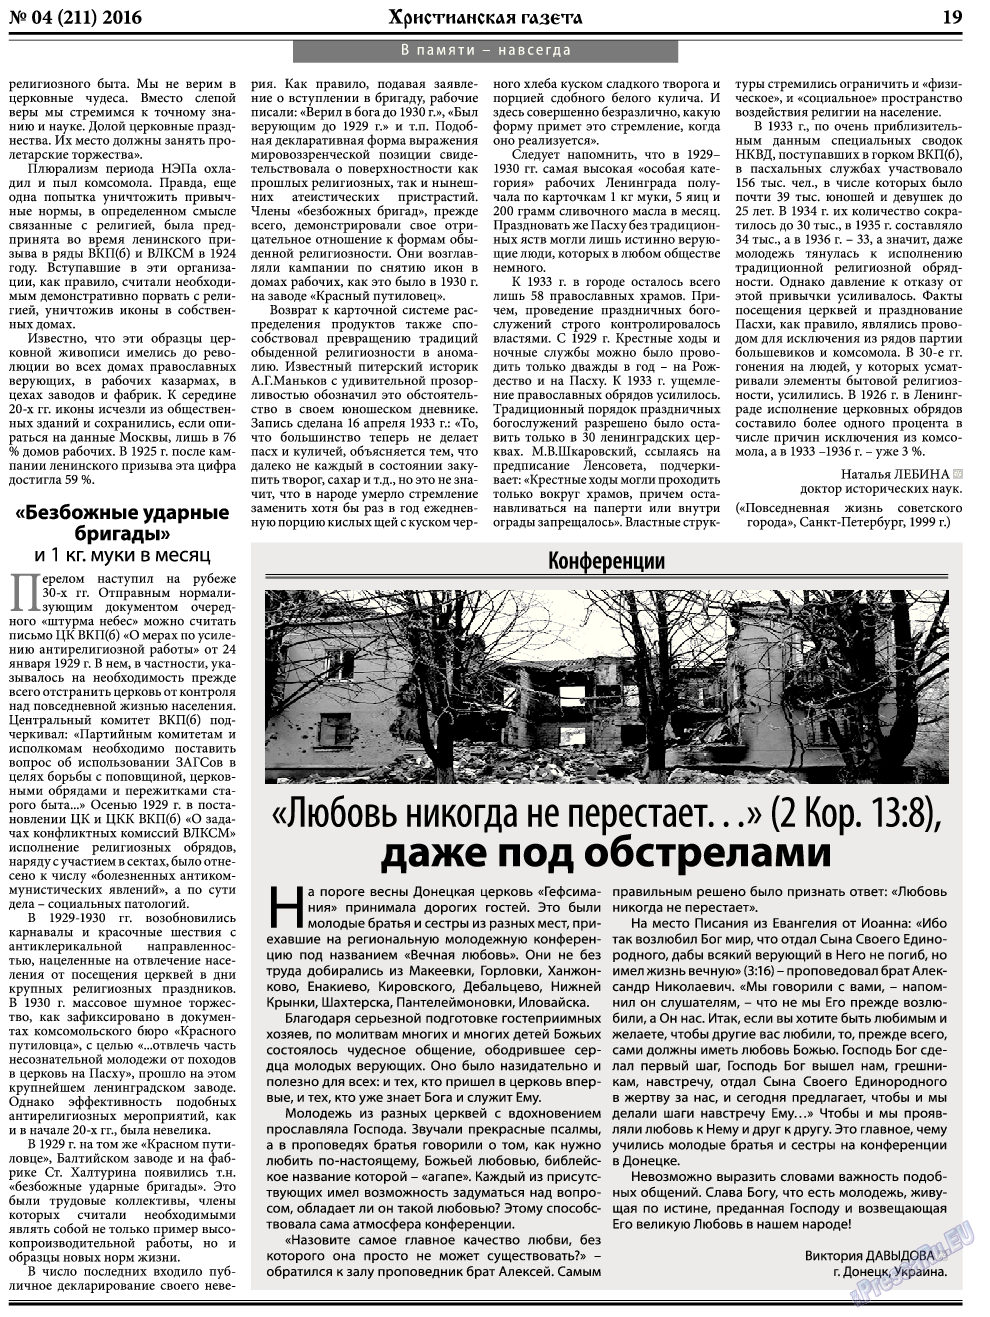 Христианская газета, газета. 2016 №4 стр.27